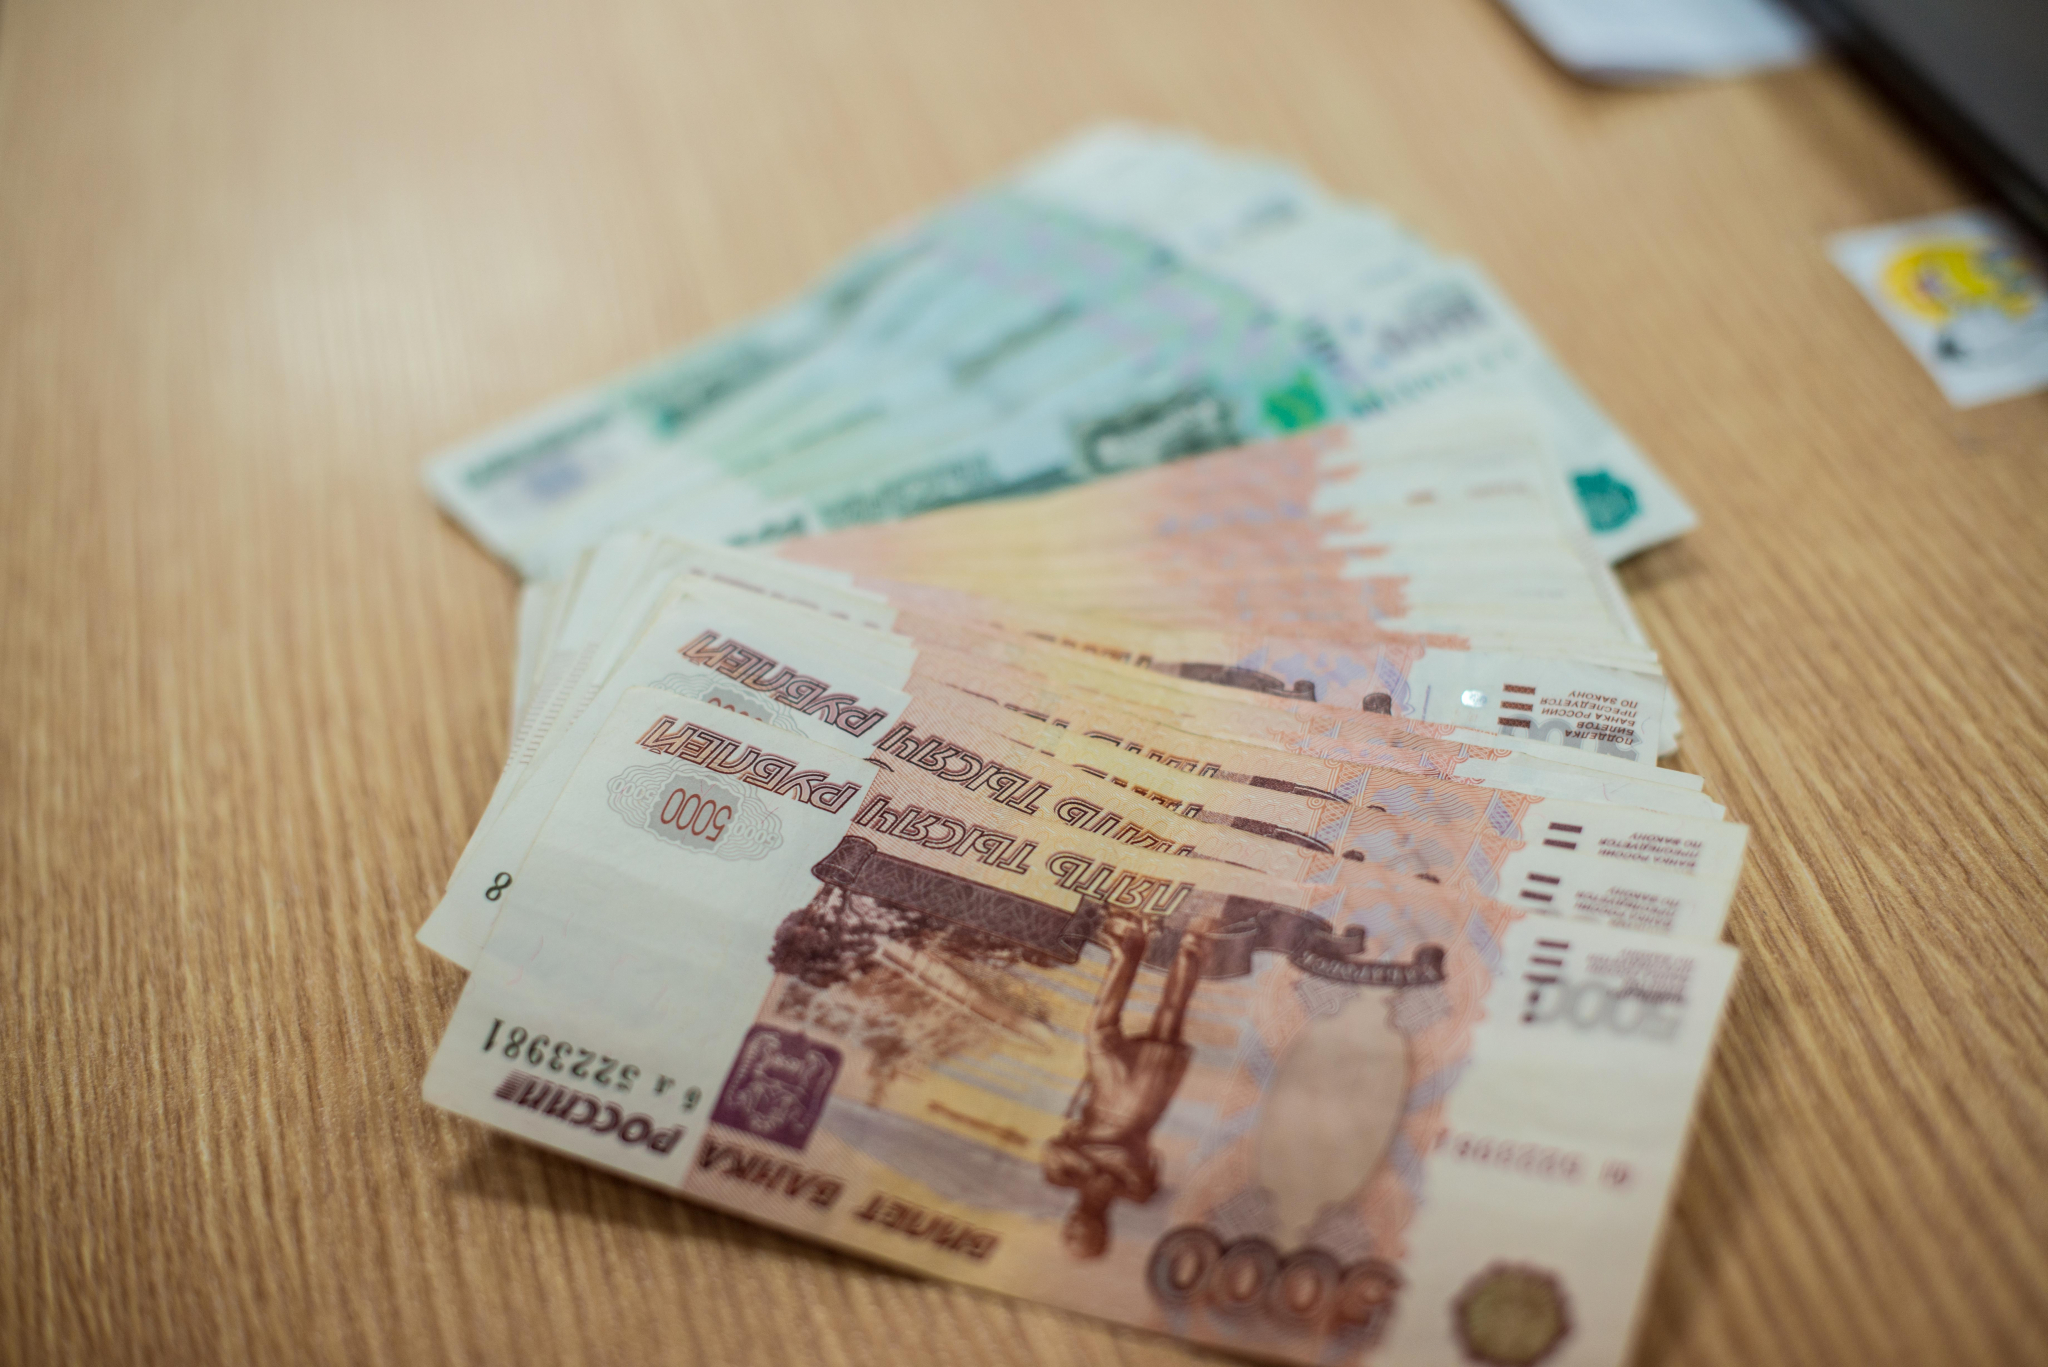 Преподаватель института в Саранске поставила зачет студенту за деньги